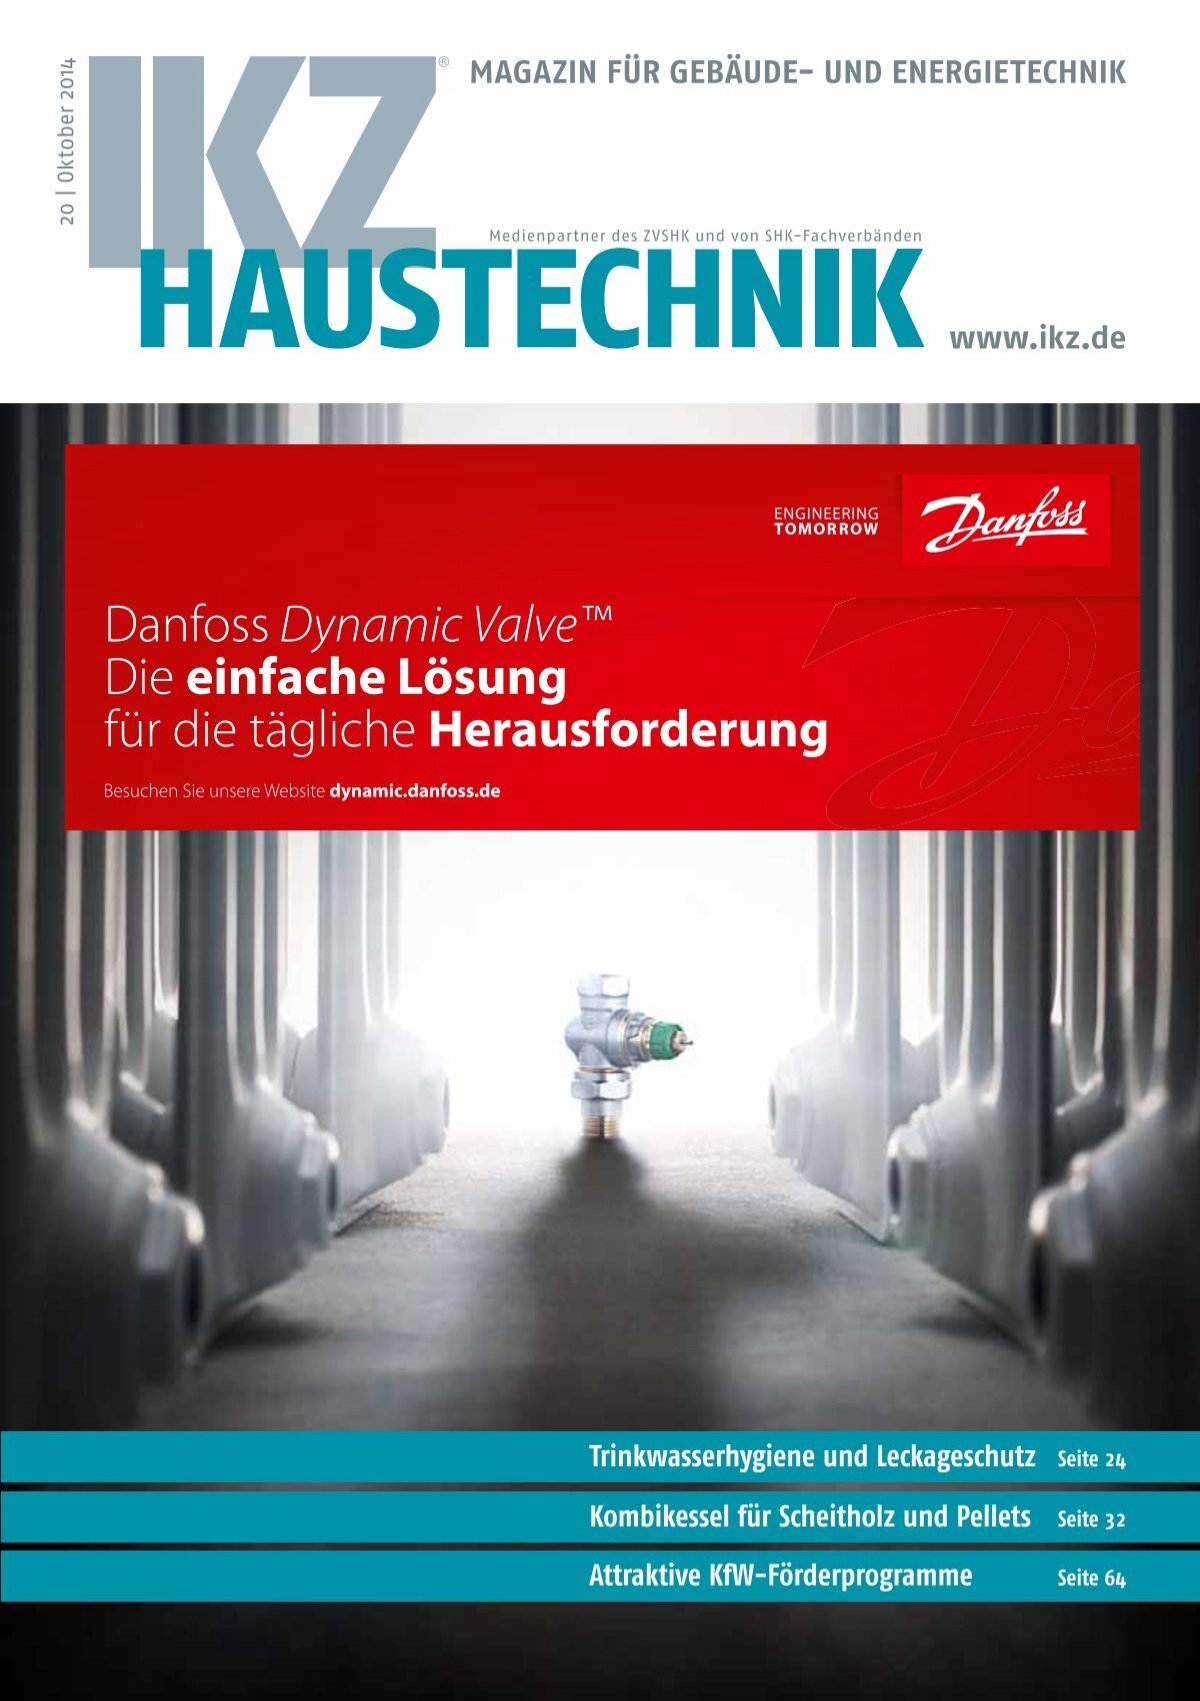 LÜTTEKEN - Ihr Partner für Handwerk und Industrie » Antidröhn